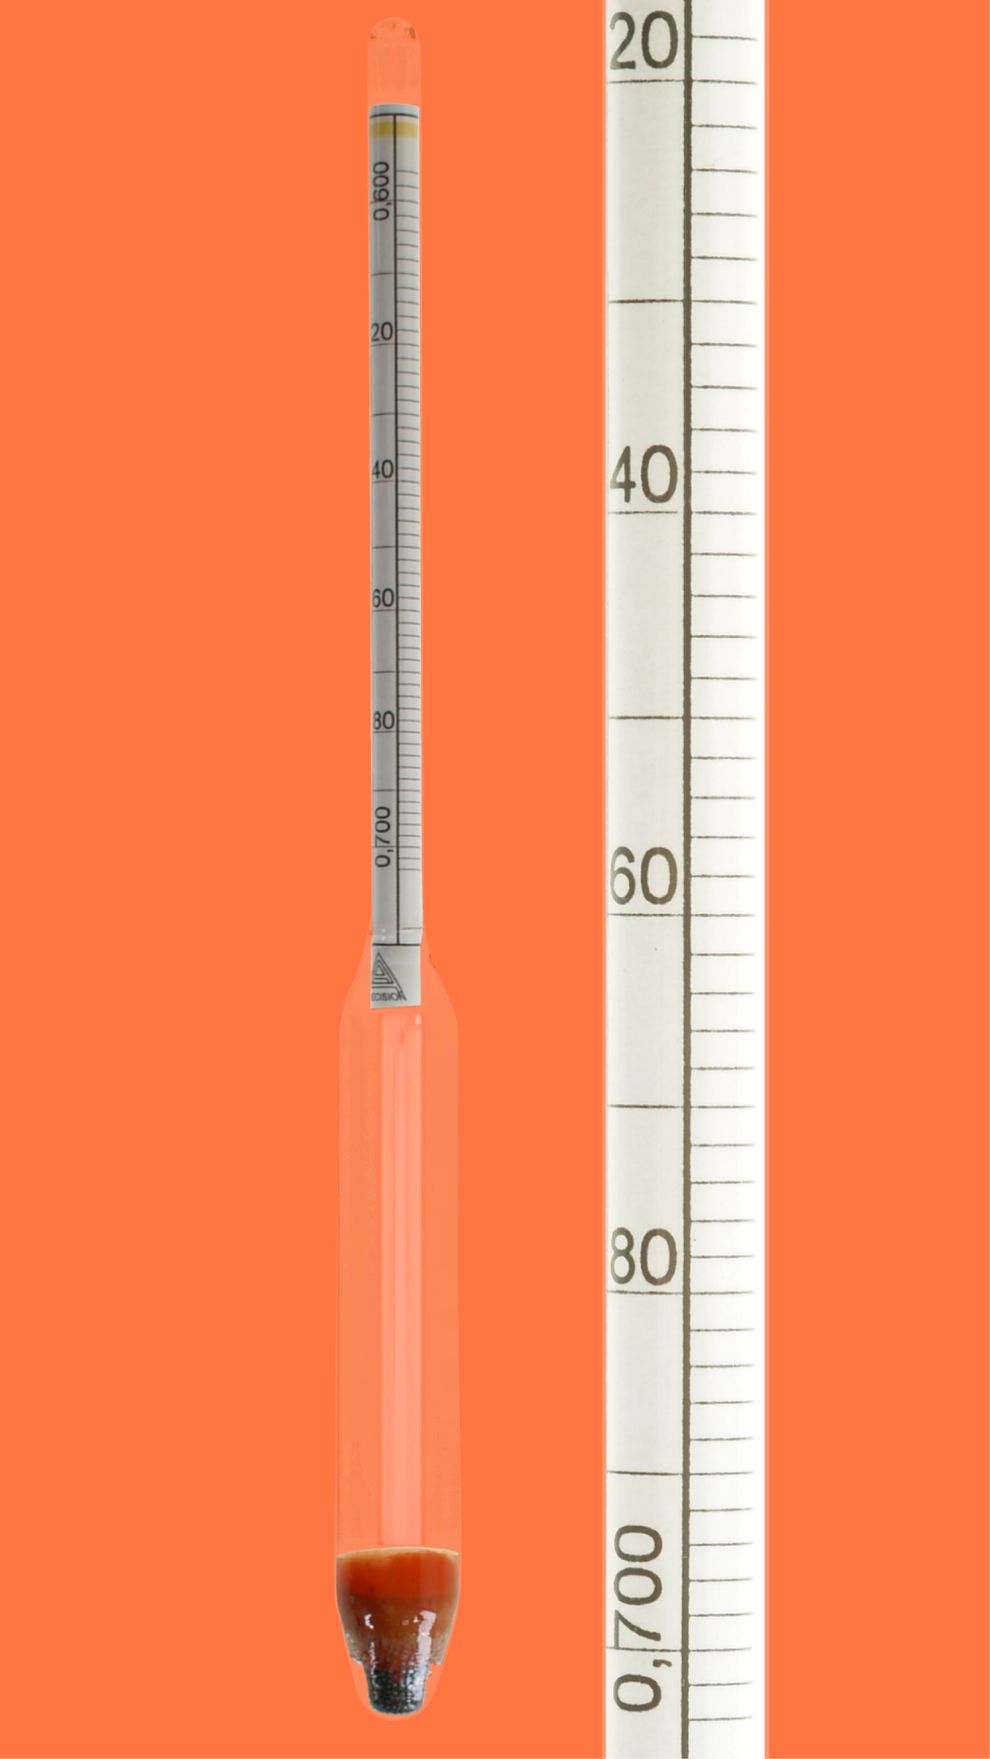 Satz Aräometer, DIN 12791, M100, 0,60-2,00, Bezugstemp. 20°C, ohne Thermometer